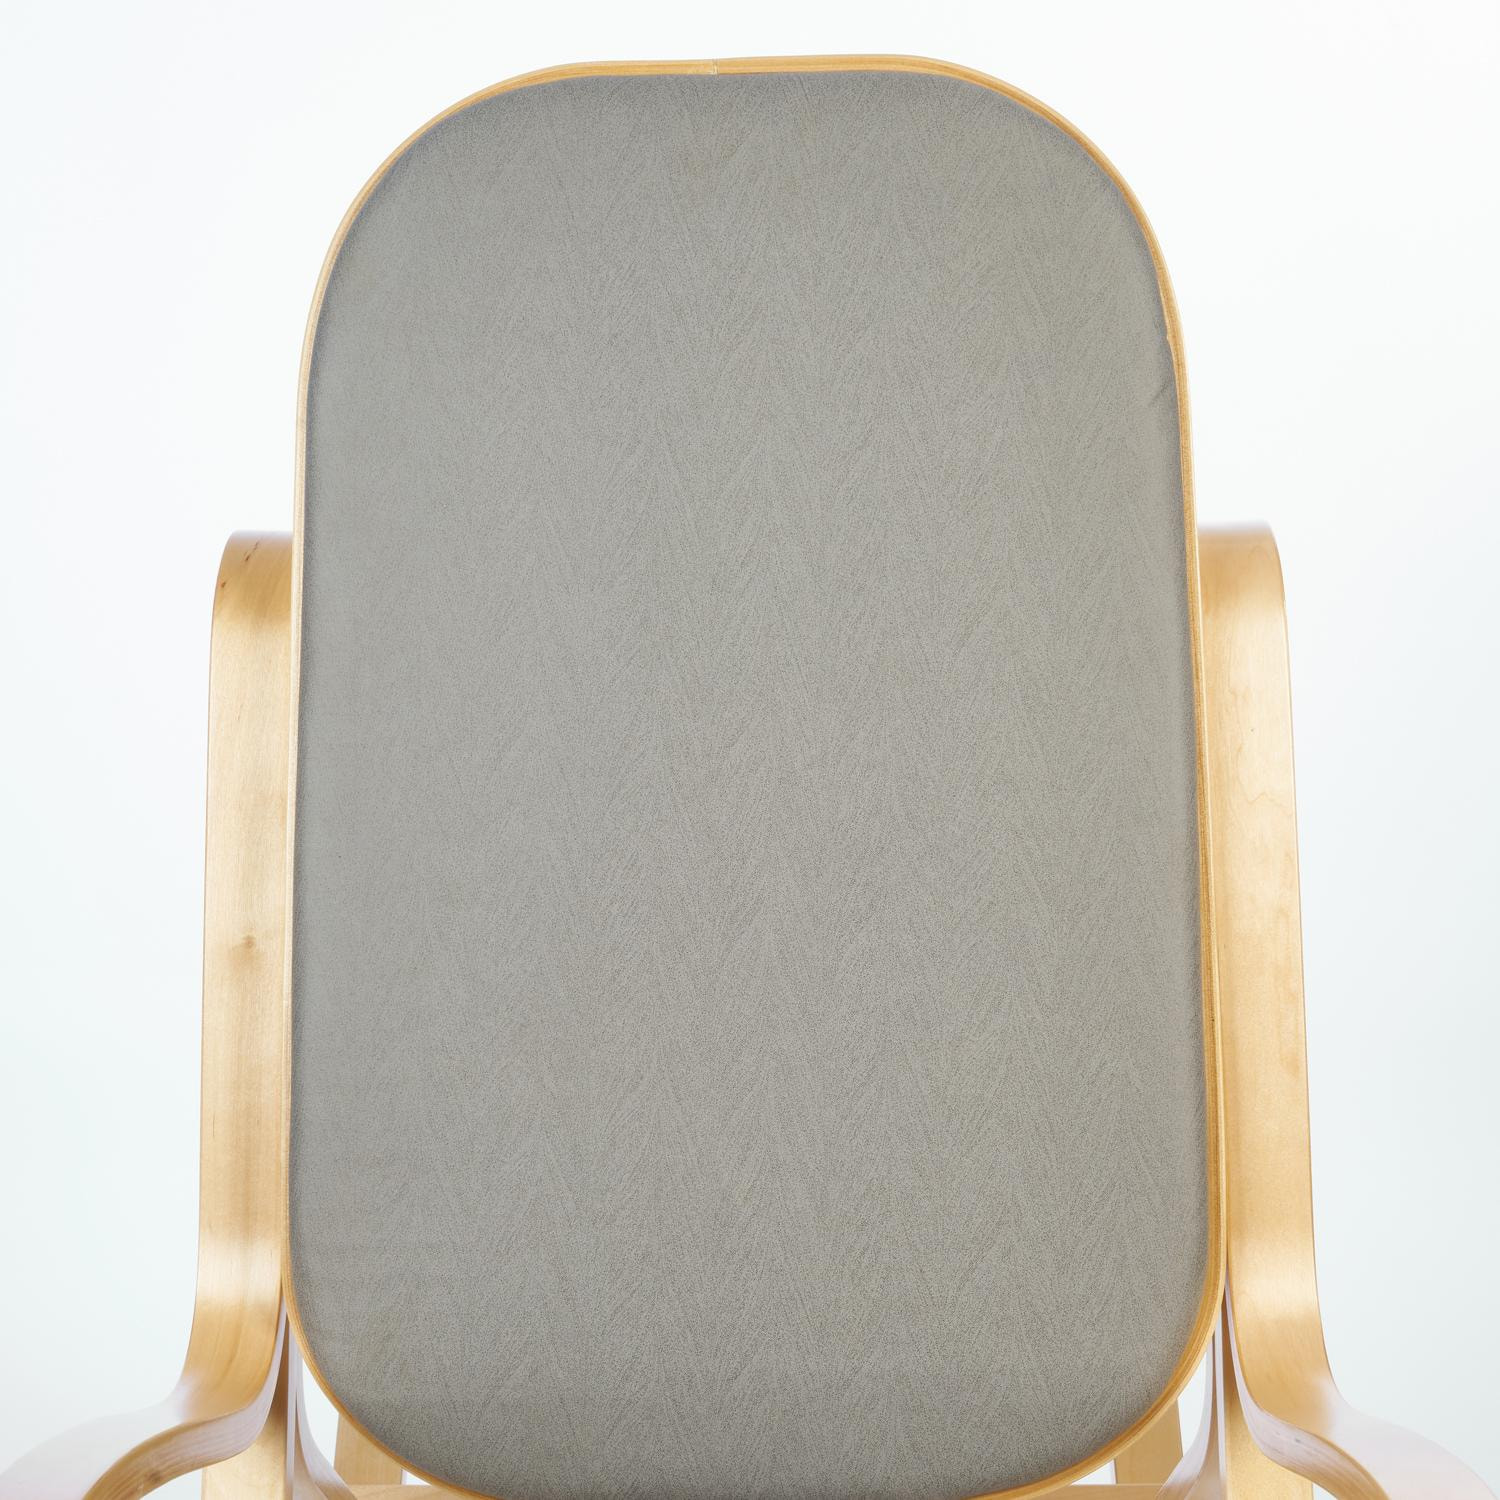 Кресло-качалка mod. AX3002-2 дерево береза, ткань: полиэстер/хлопок, 55х98х91 см, дерево: натуральный #1/ ткань светло-серая 2022